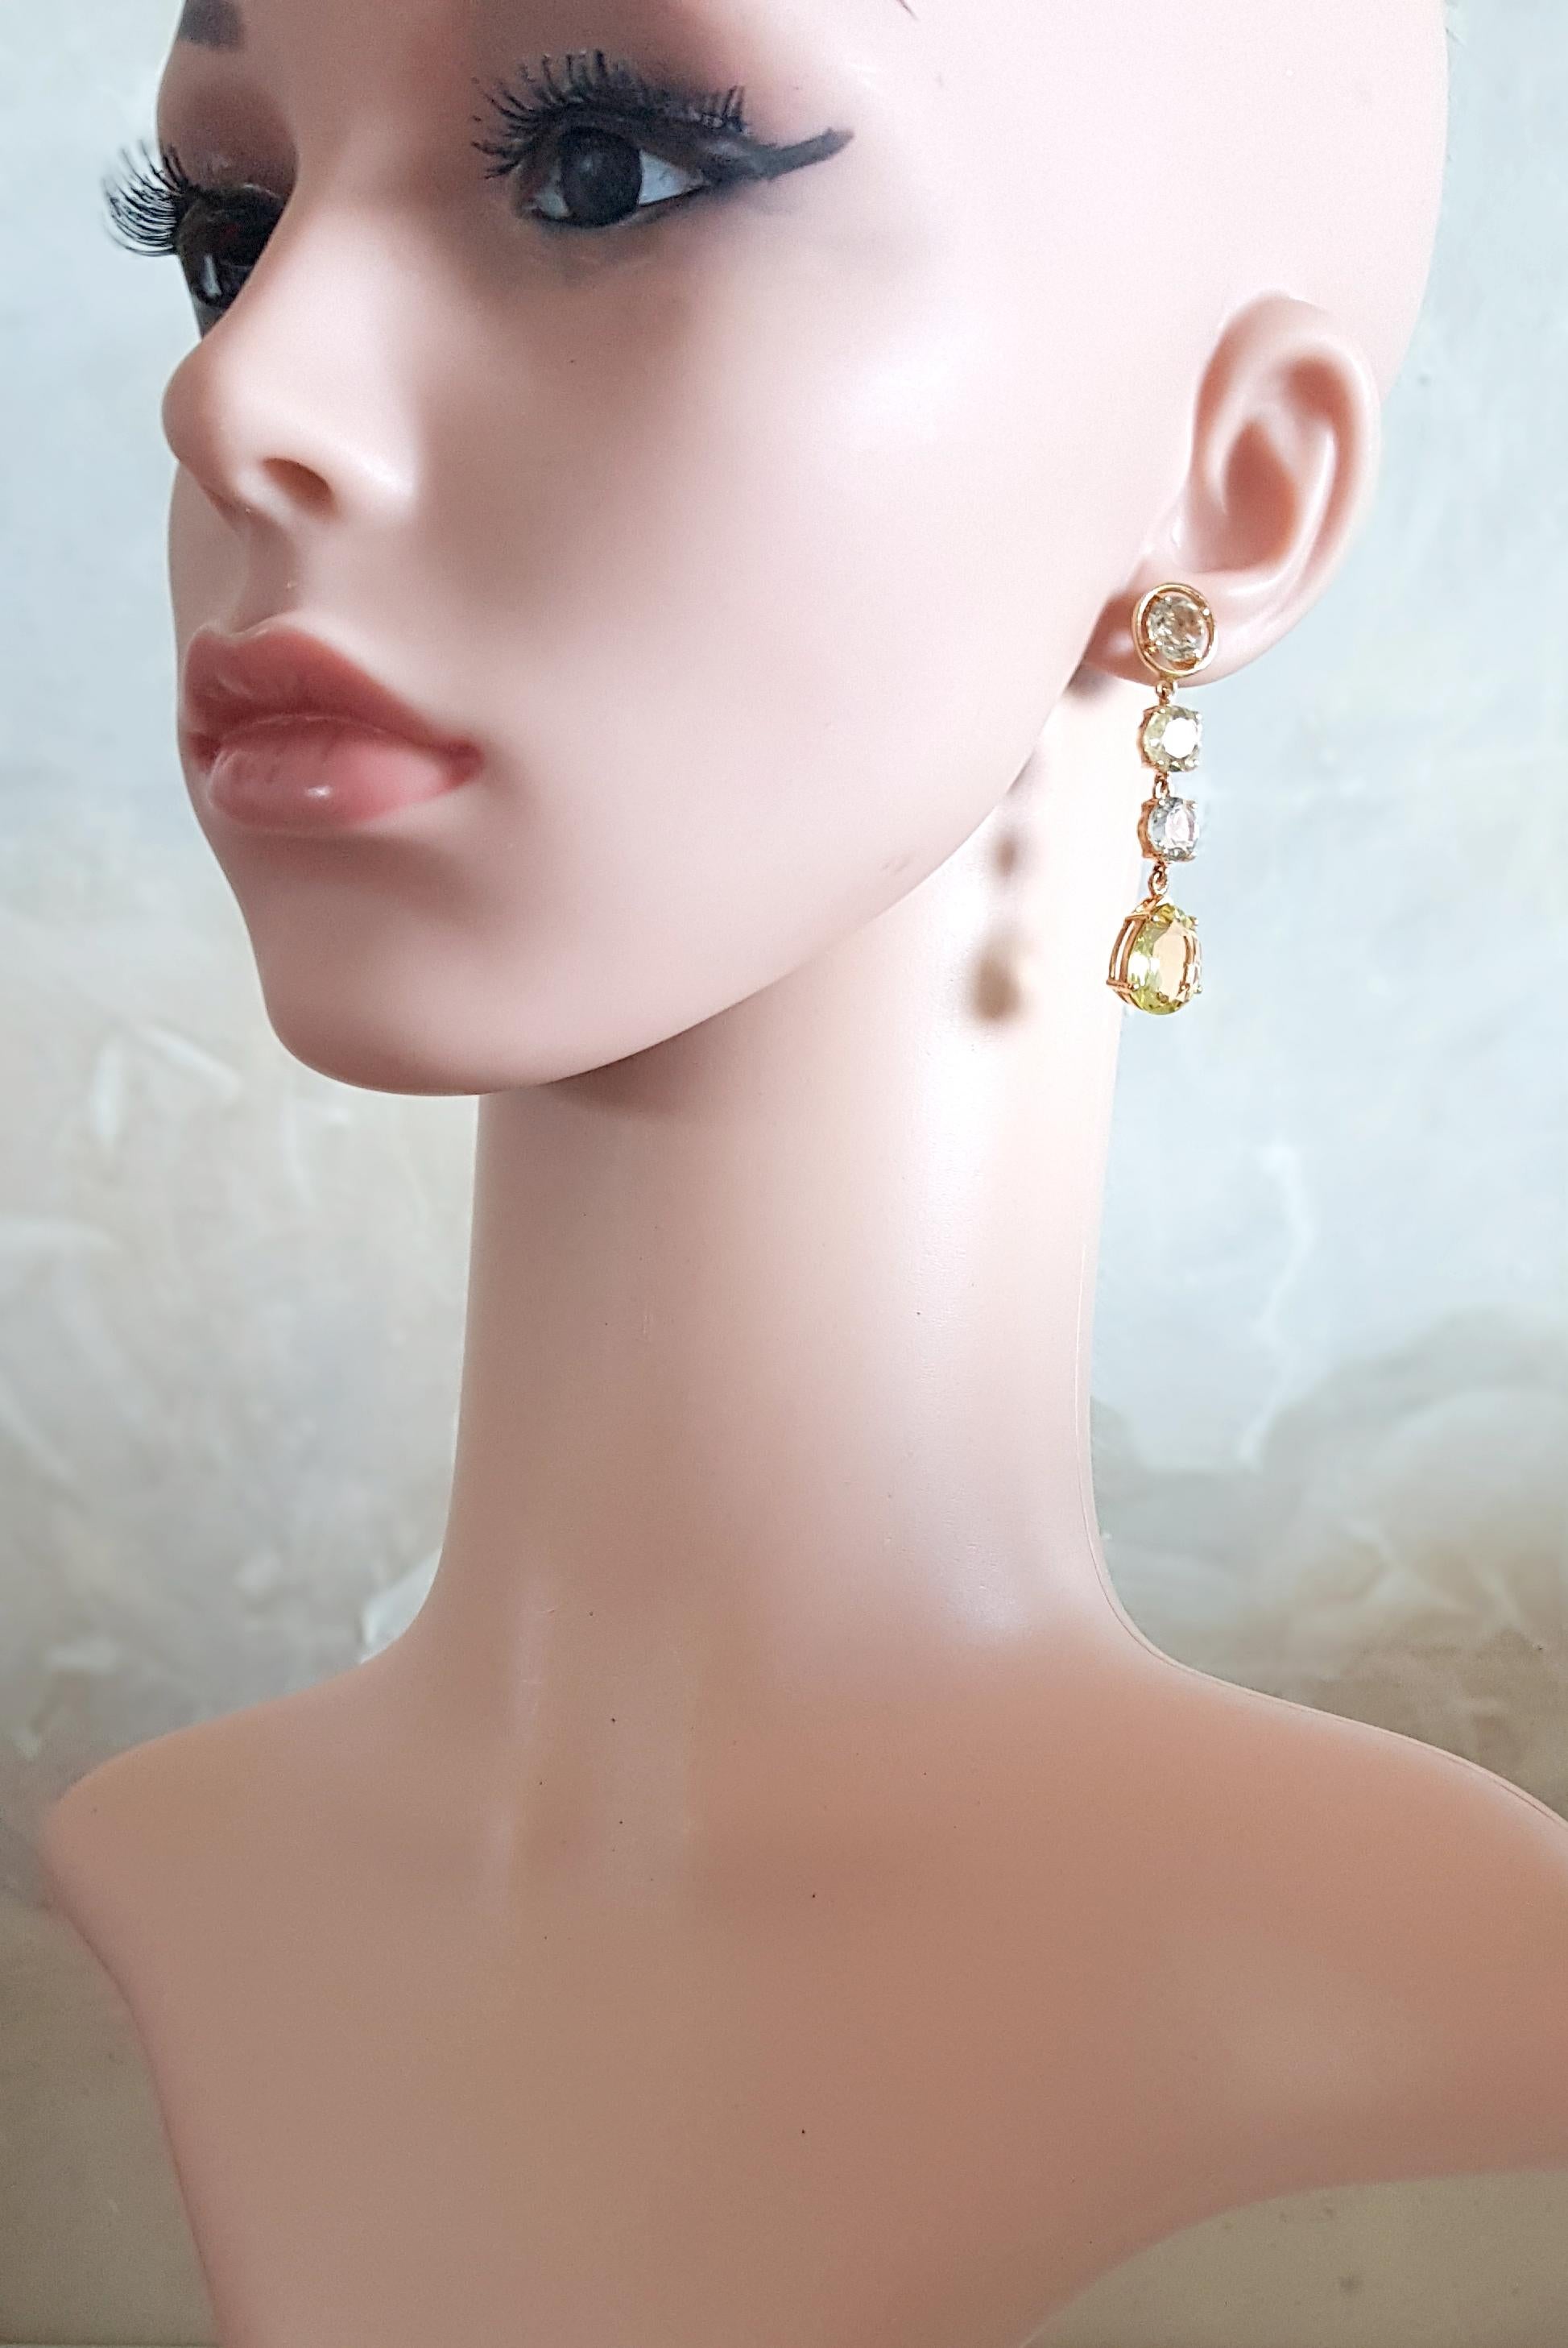 tyoes of earrings